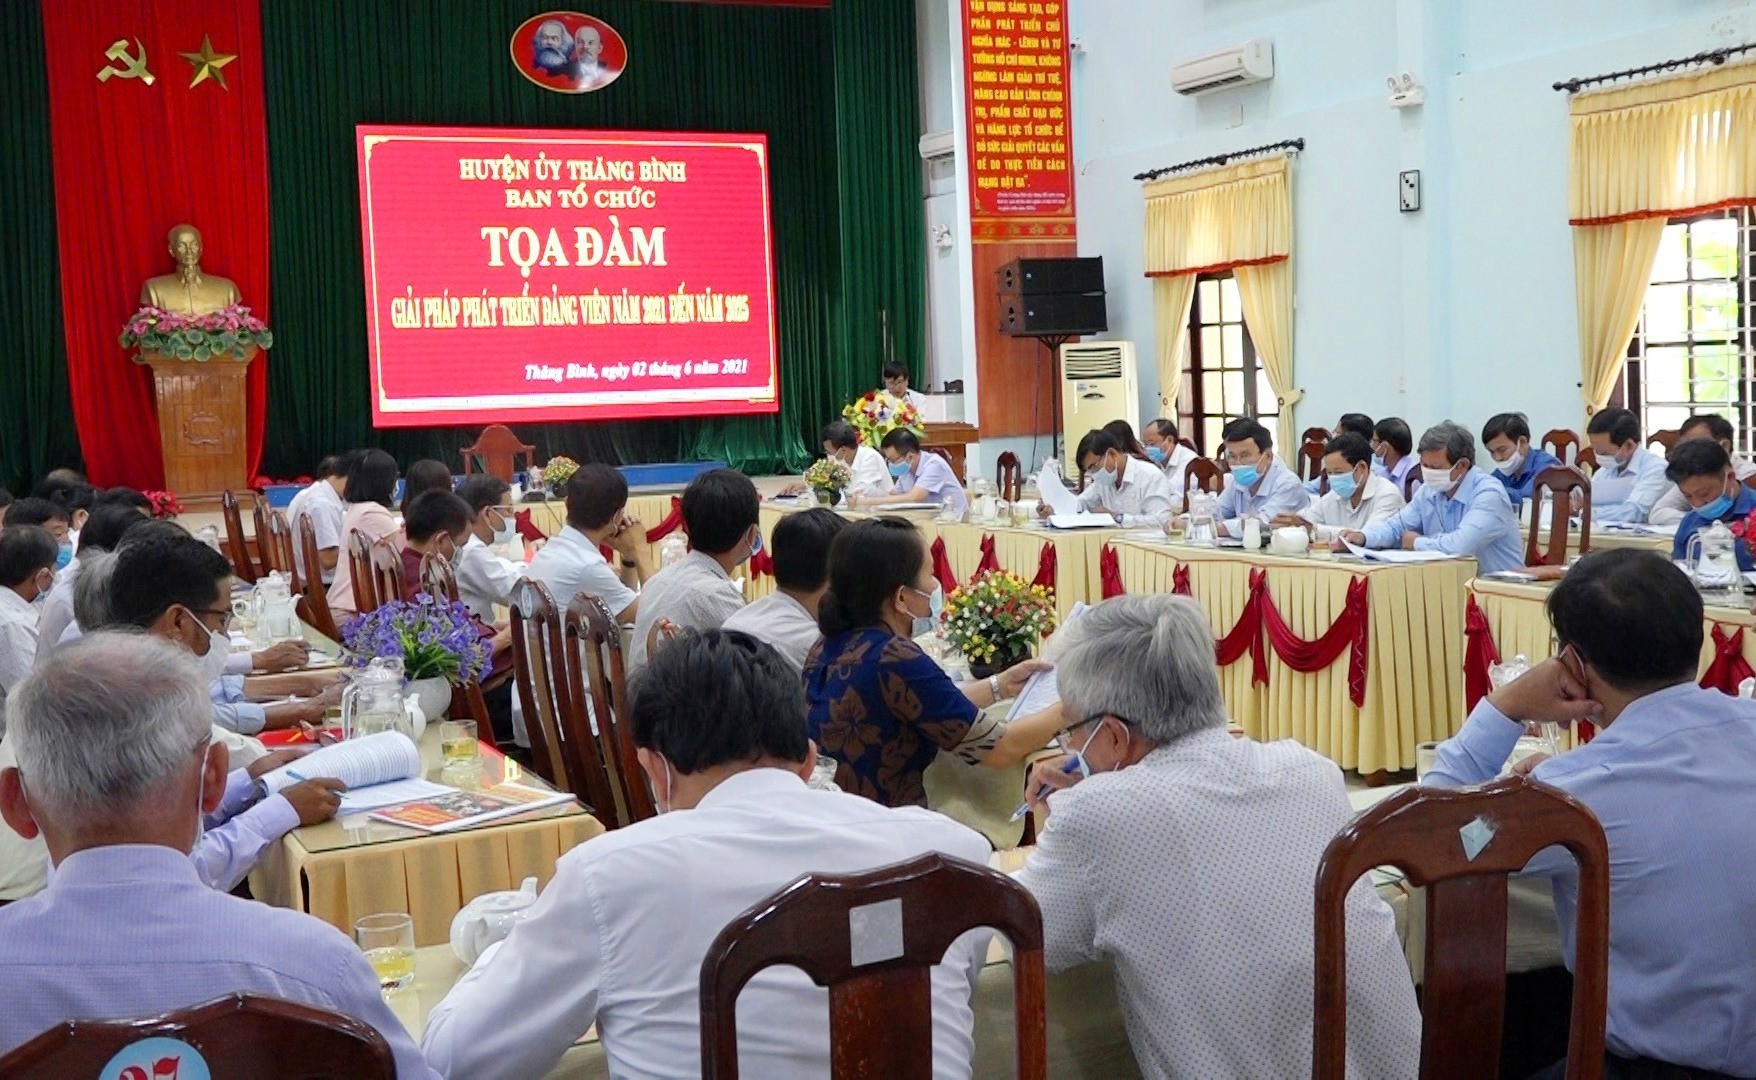 Huyện ủy Thăng Bình tổ chức “Tọa đàm phát triển đảng viên năm 2021 đến năm 2025” vào tháng 6.2021. Ảnh: MINH TÂN